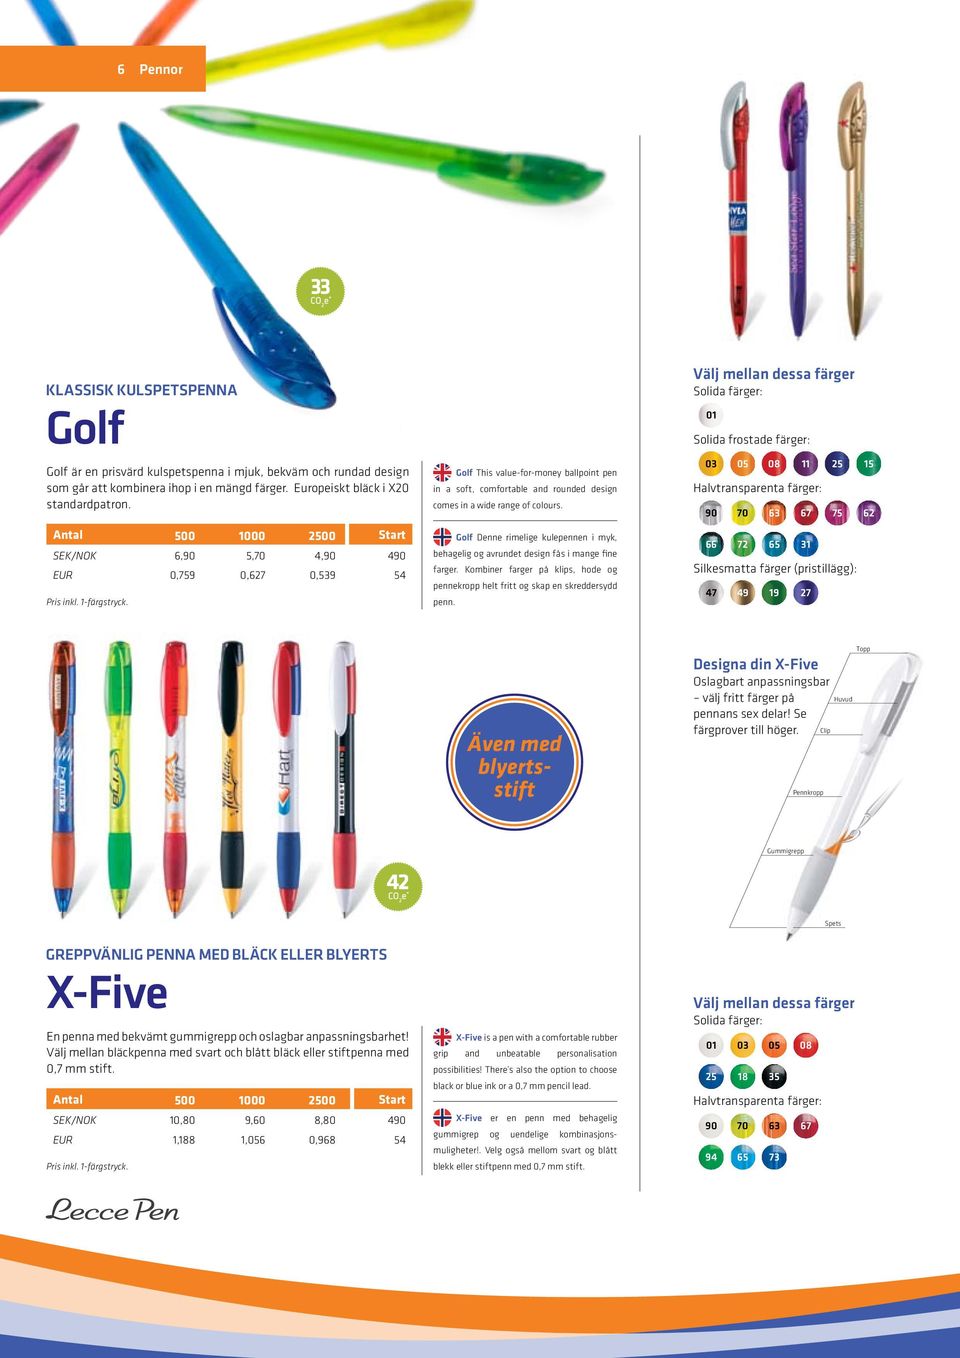 Golf Denne rimelige kulepennen i myk, behagelig og avrundet design fås i mange fine farger. Kombiner farger på klips, hode og pennekropp helt fritt og skap en skreddersydd penn.